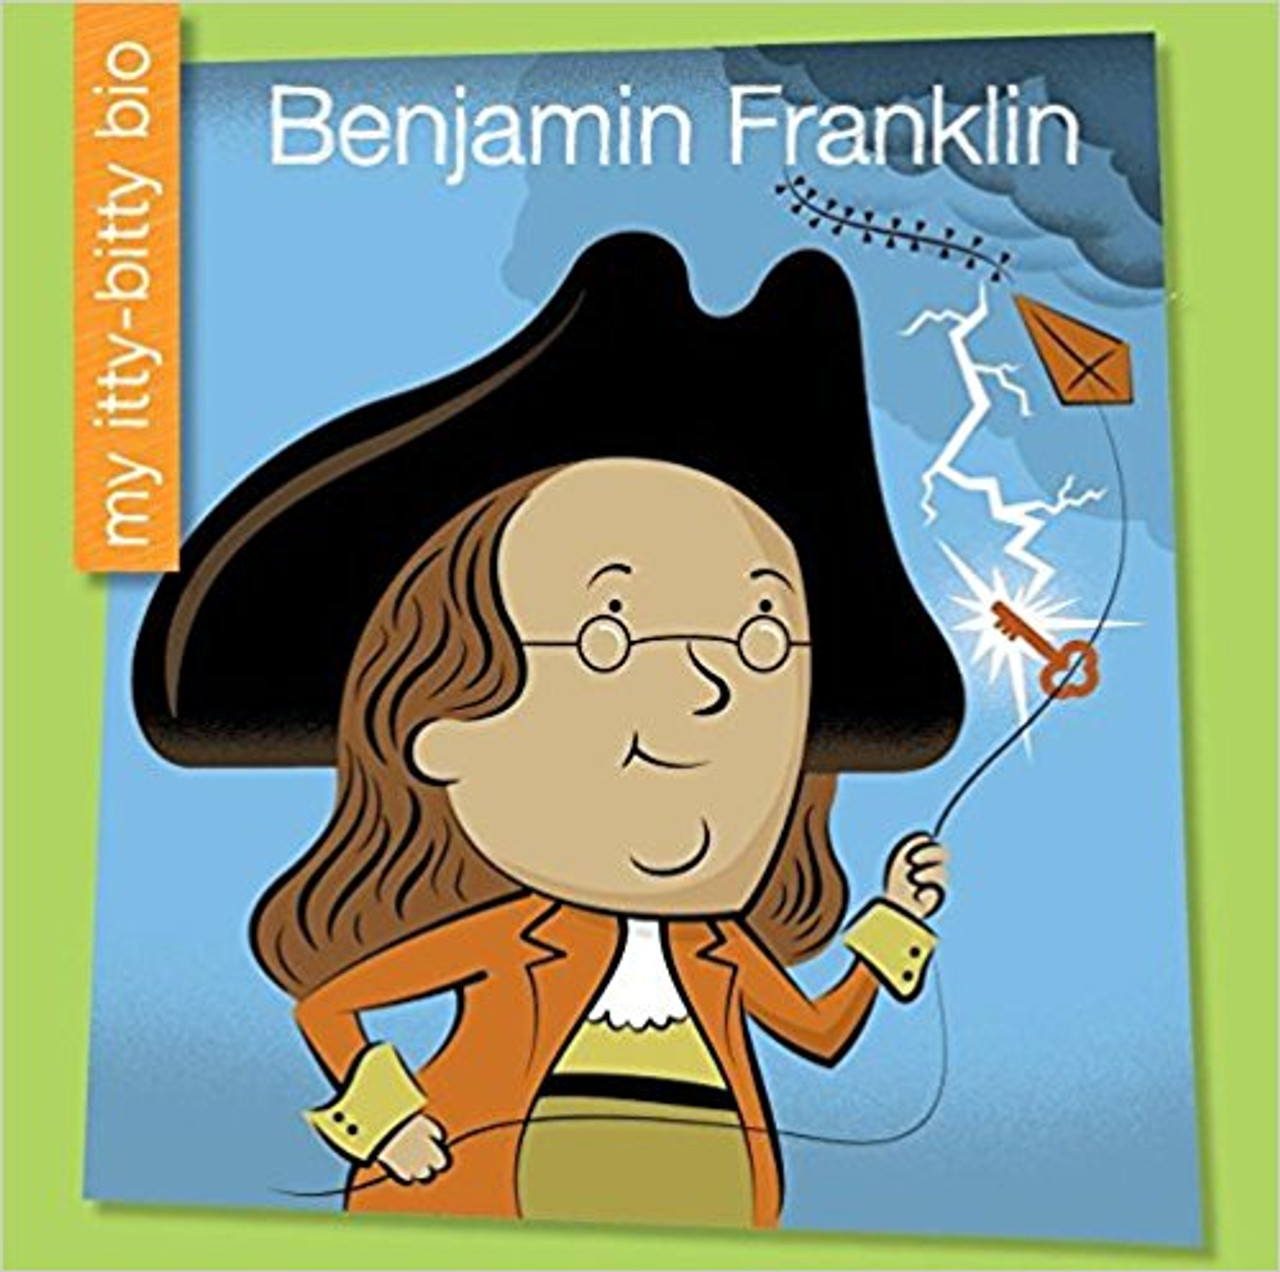 Benjamin Franklin by Emma E. Haldy (My Itty Bitty Bio)